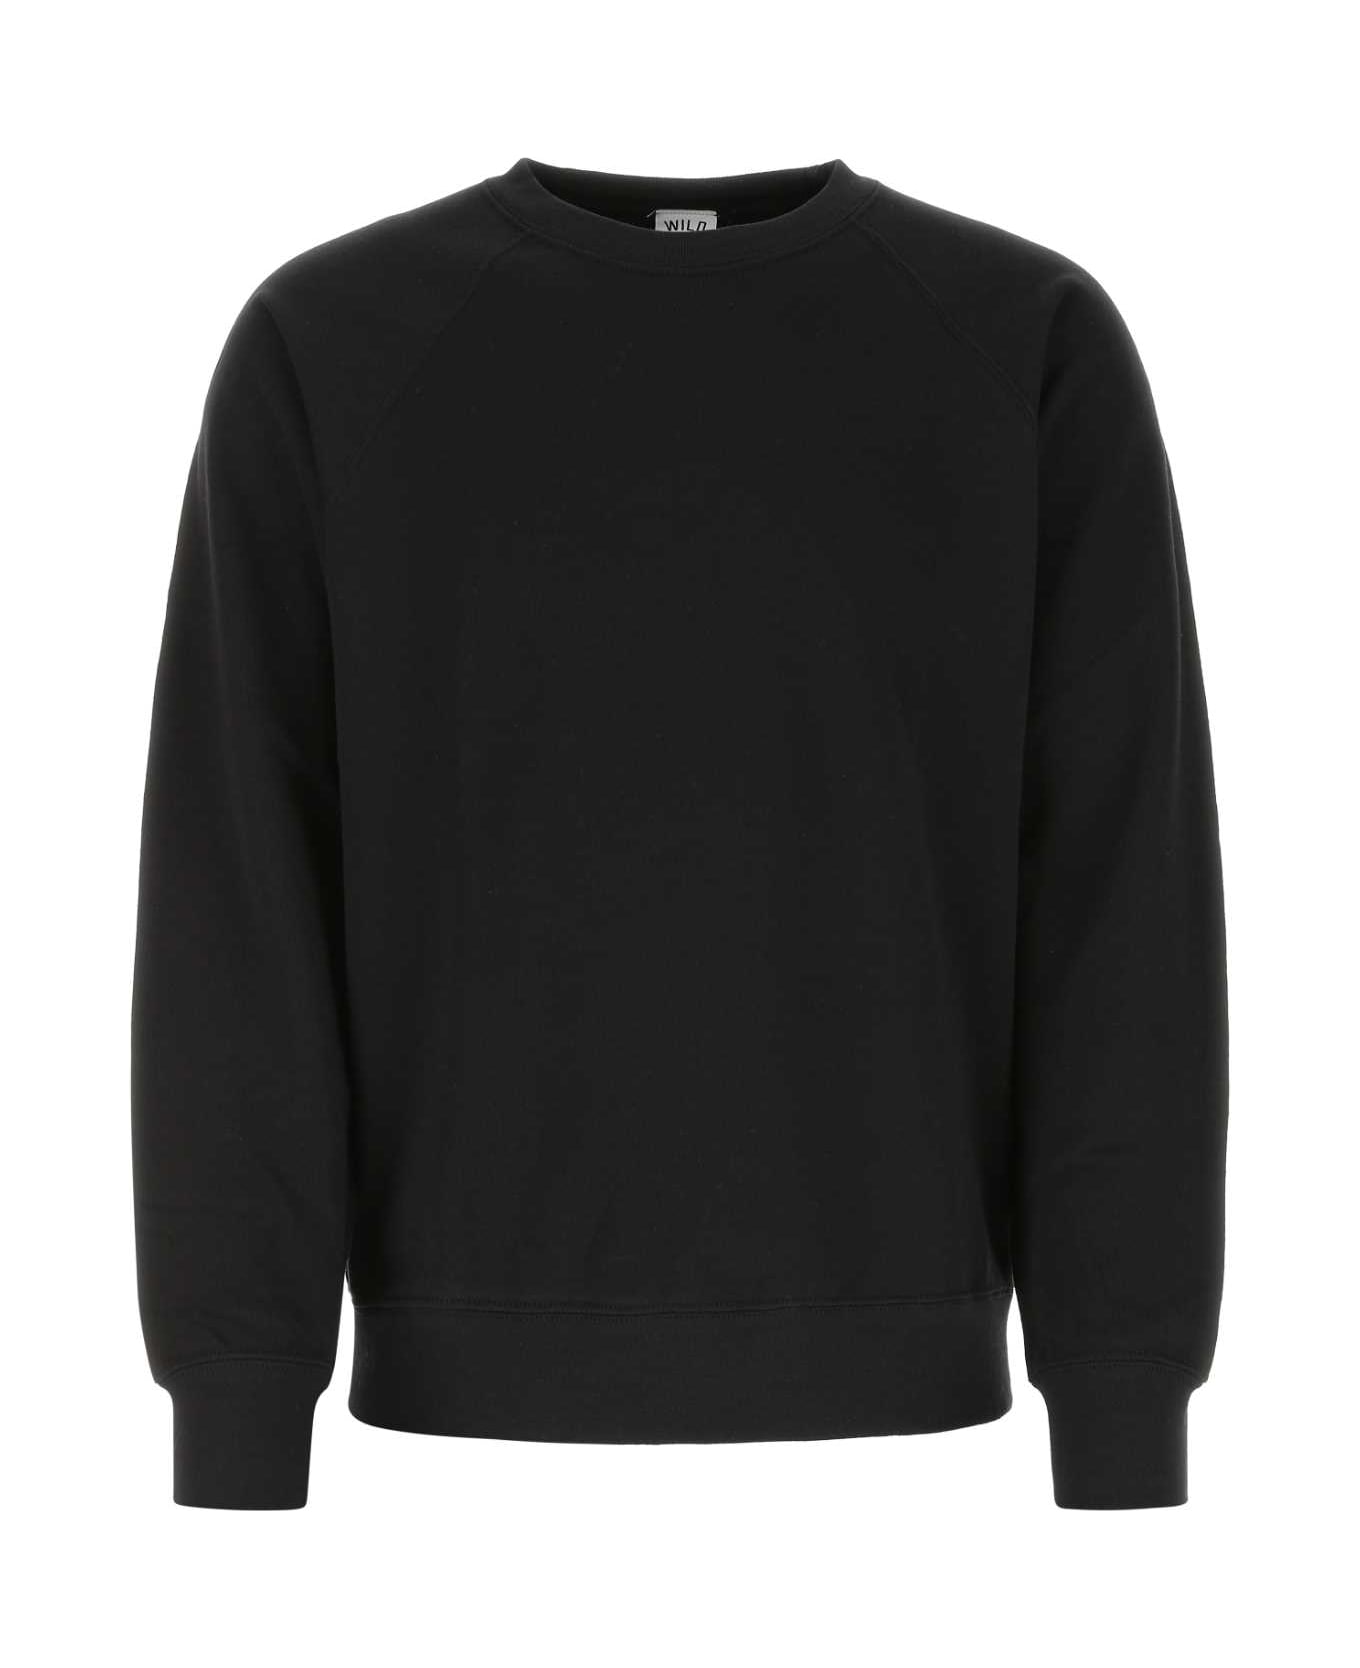 Wild Donkey Black Cotton Blend Sweatshirt - WD090 フリース